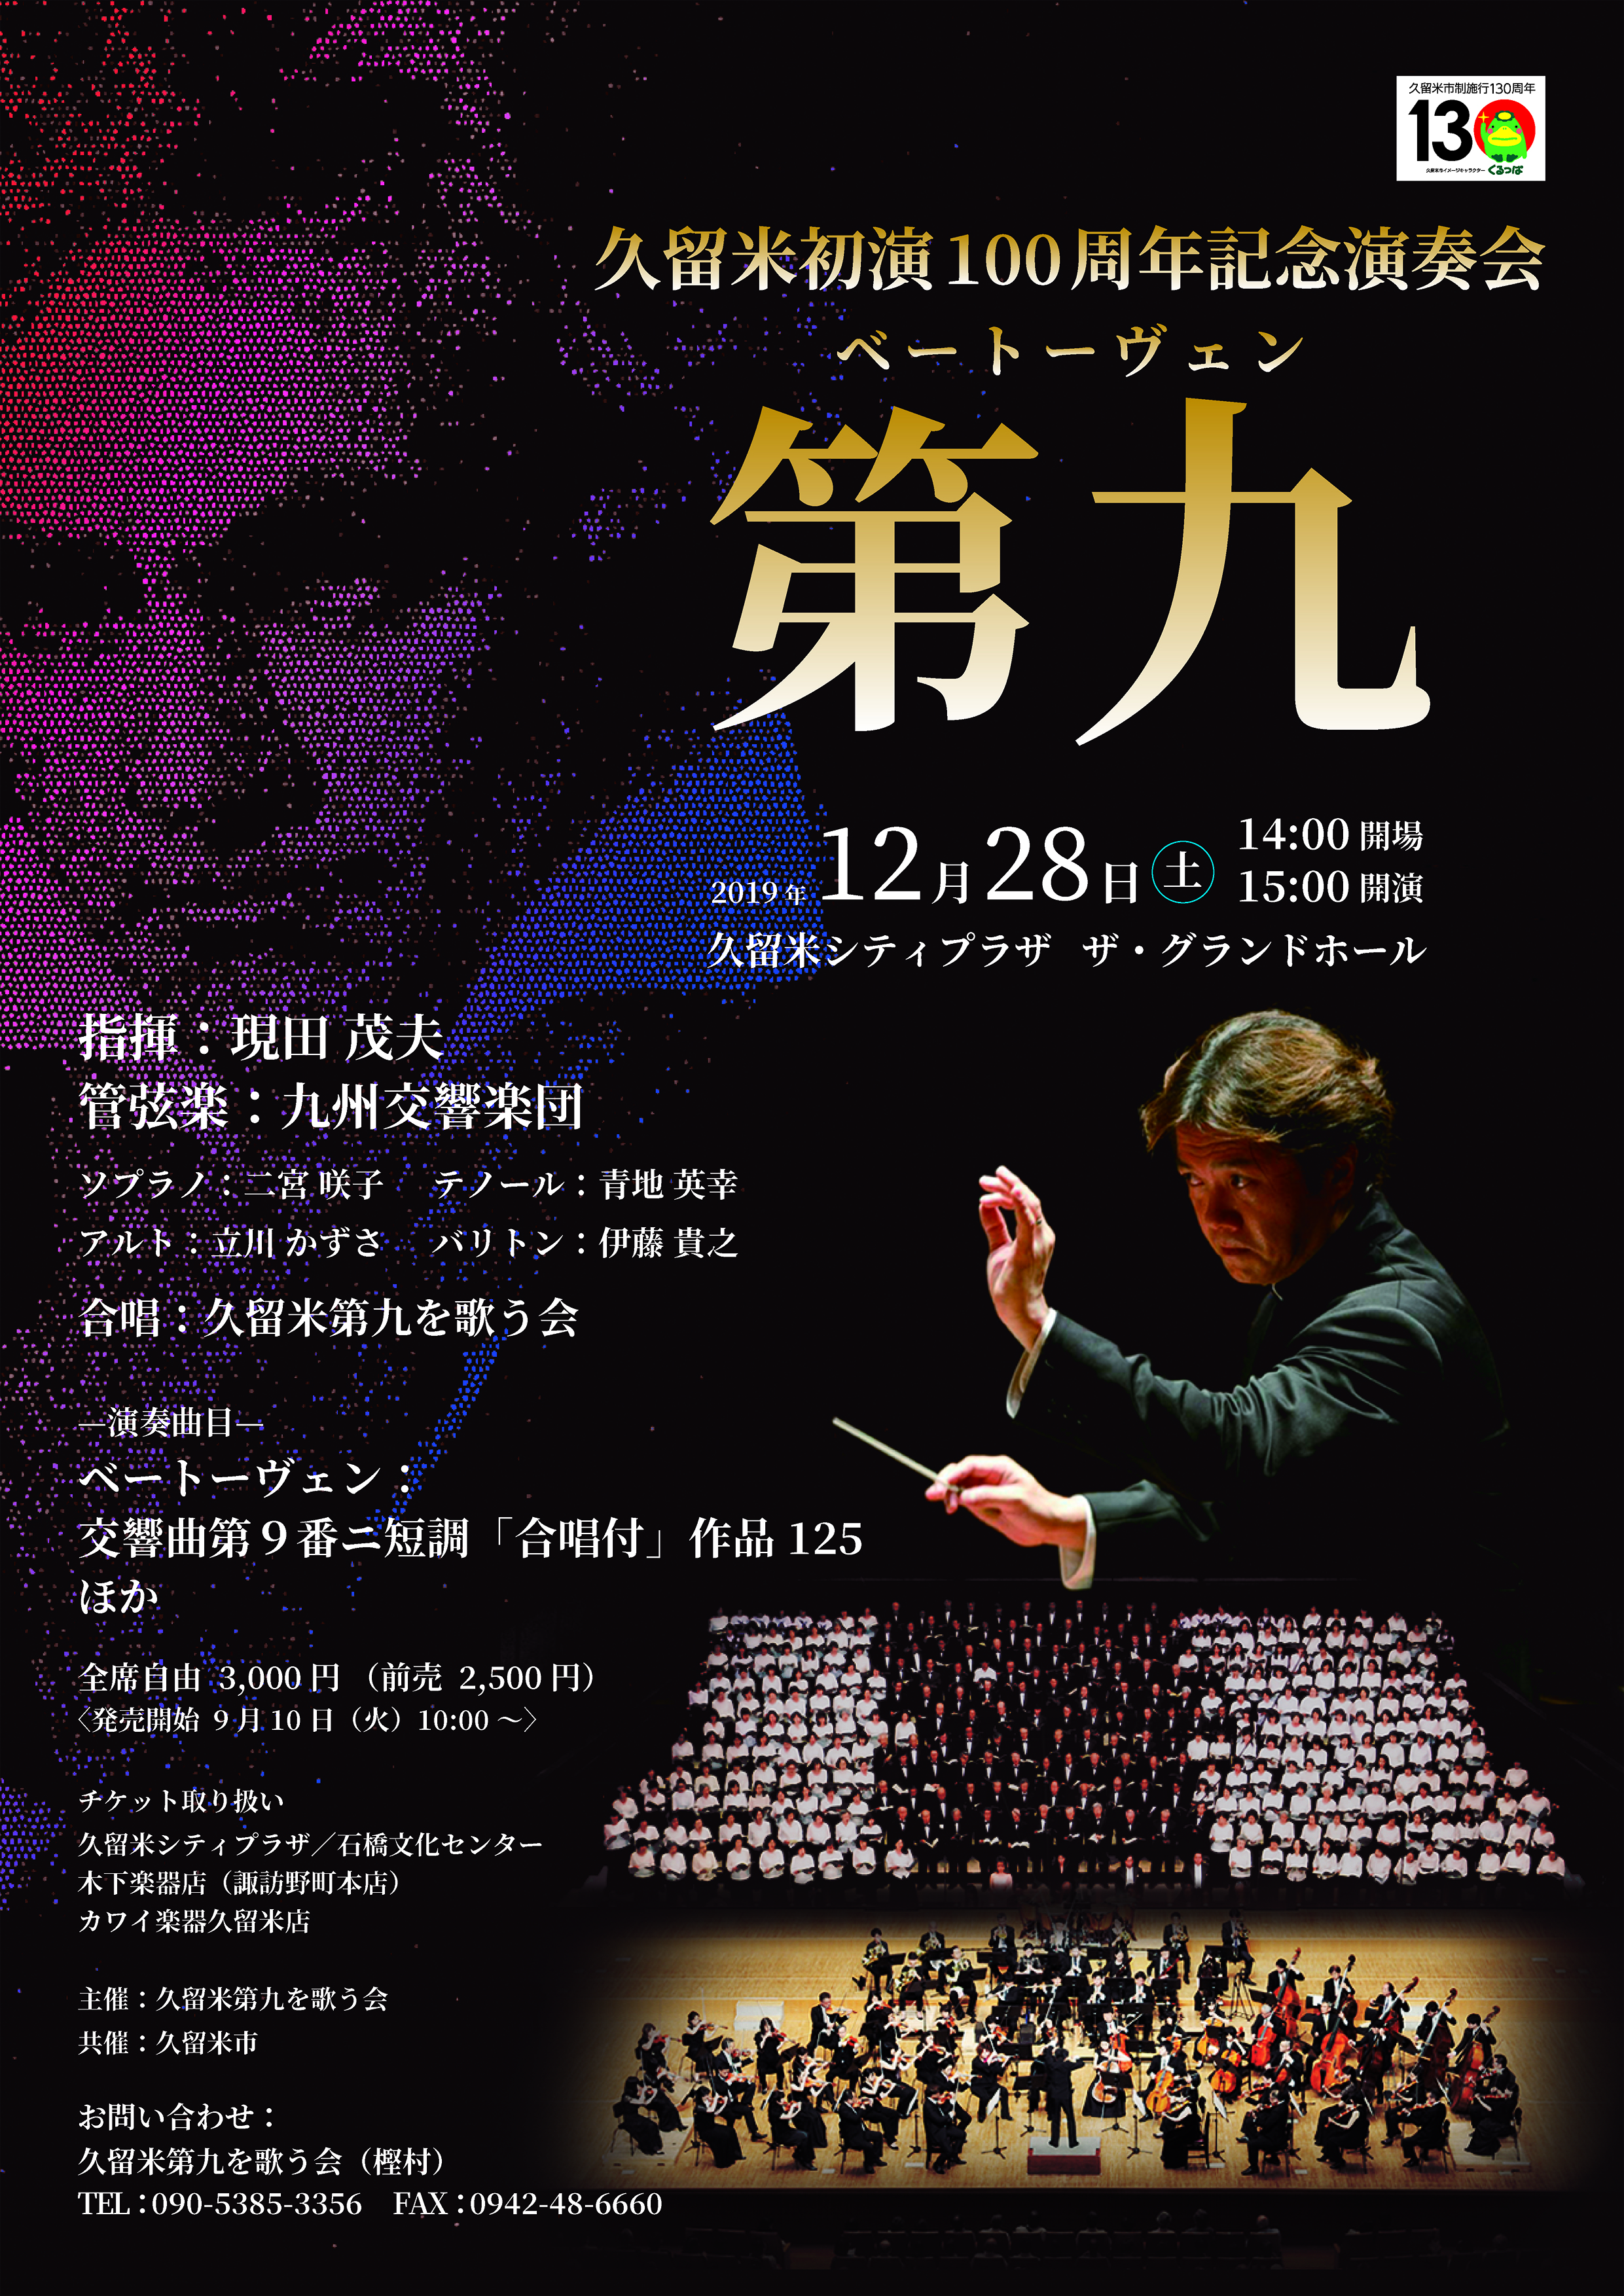 久留米初演100周年記念演奏会 ベートーヴェン『第九』